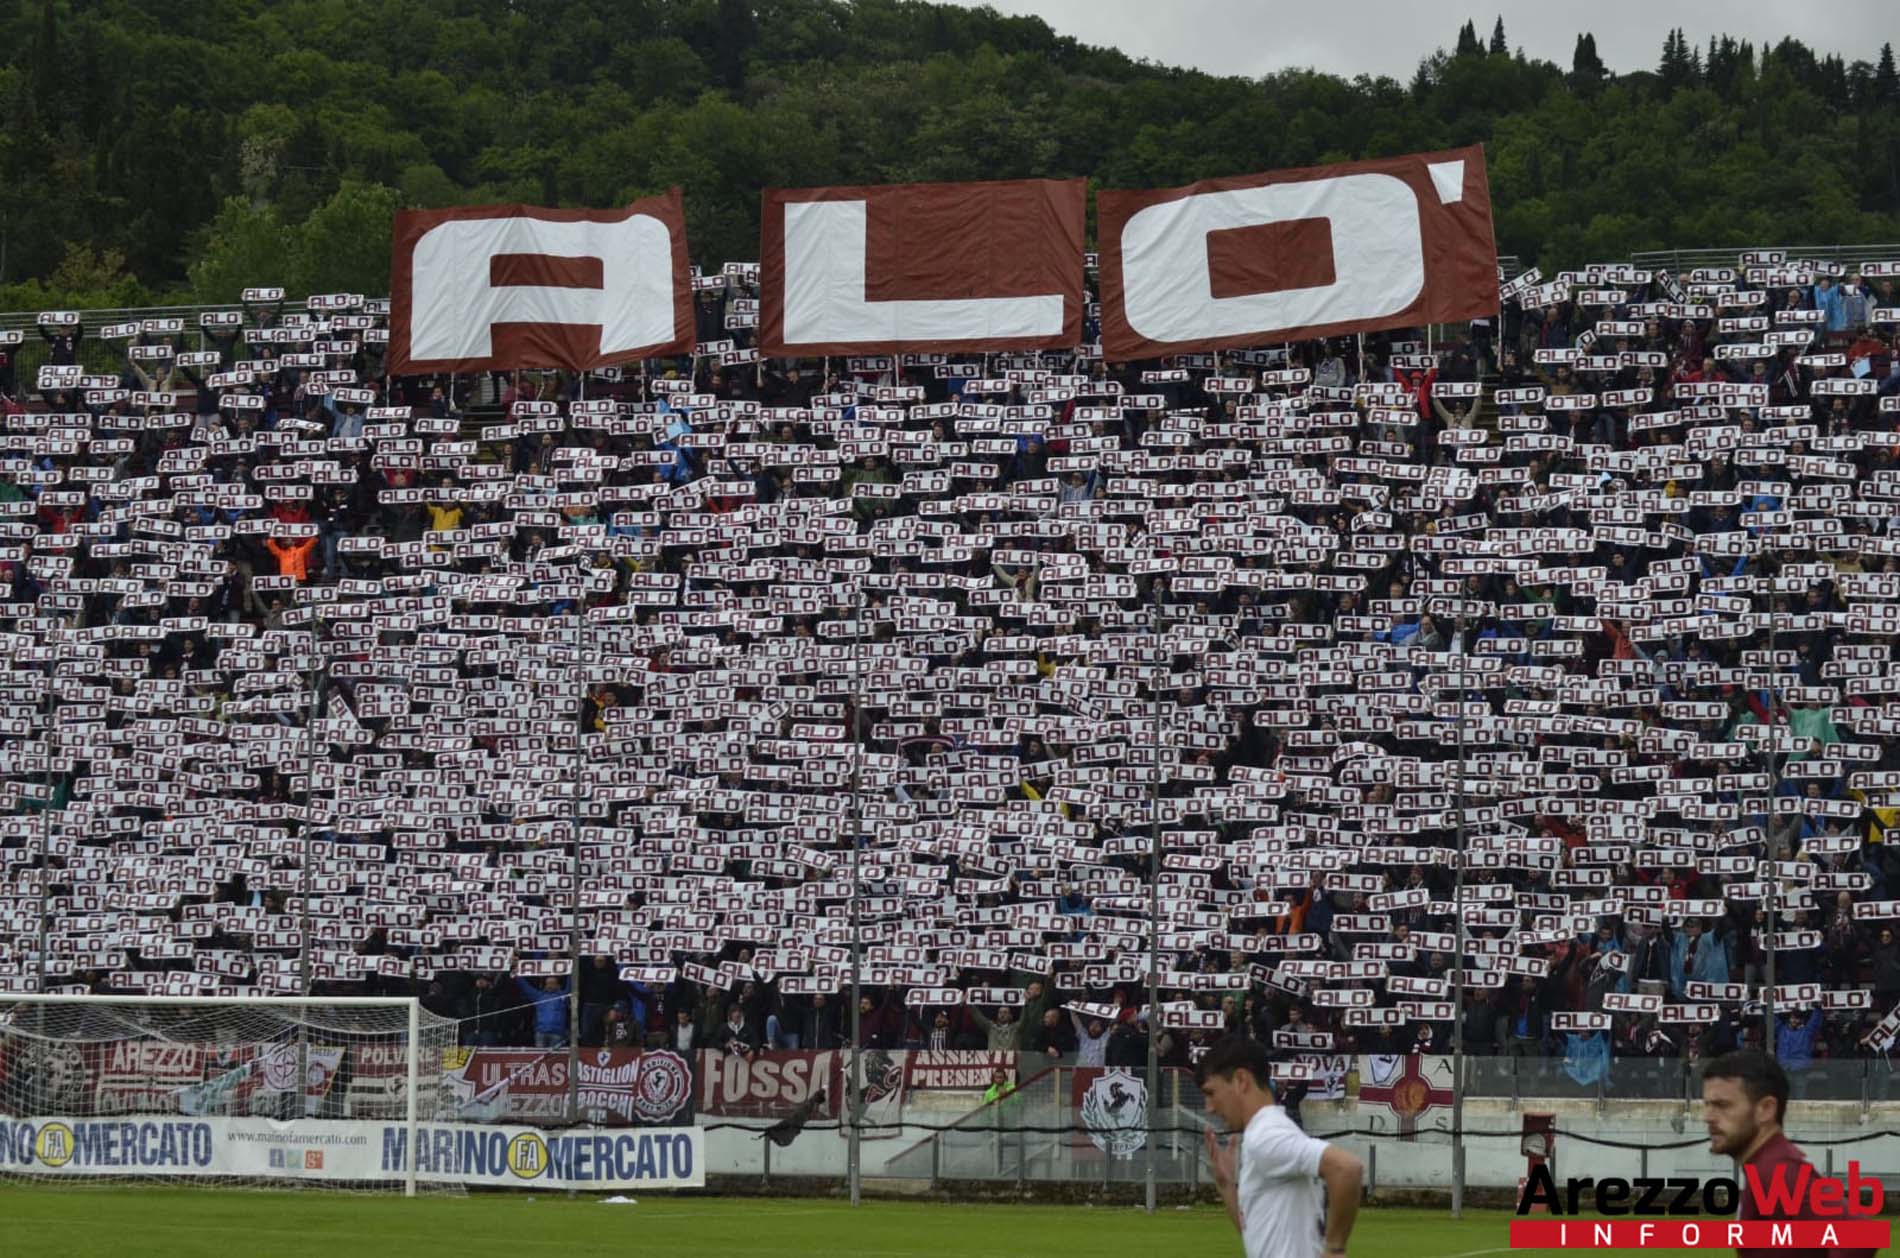 Arezzo-Viterbese 3-0 scopri tutte le emozioni della partita attraverso le nostre foto